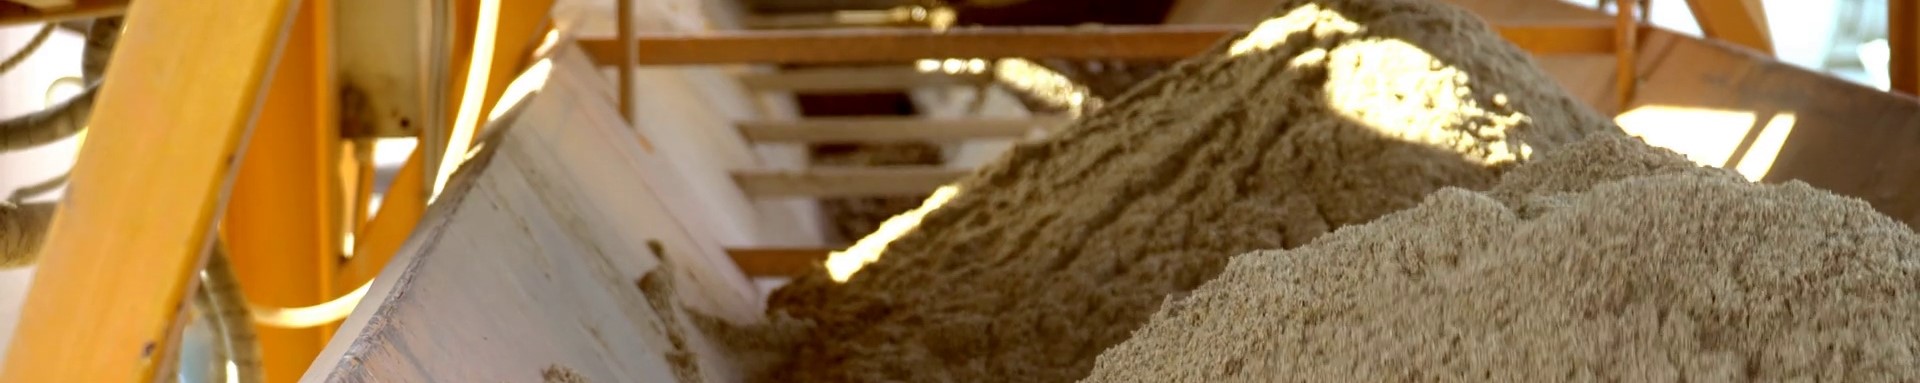 Песок для бетона в Юкки где купить цена